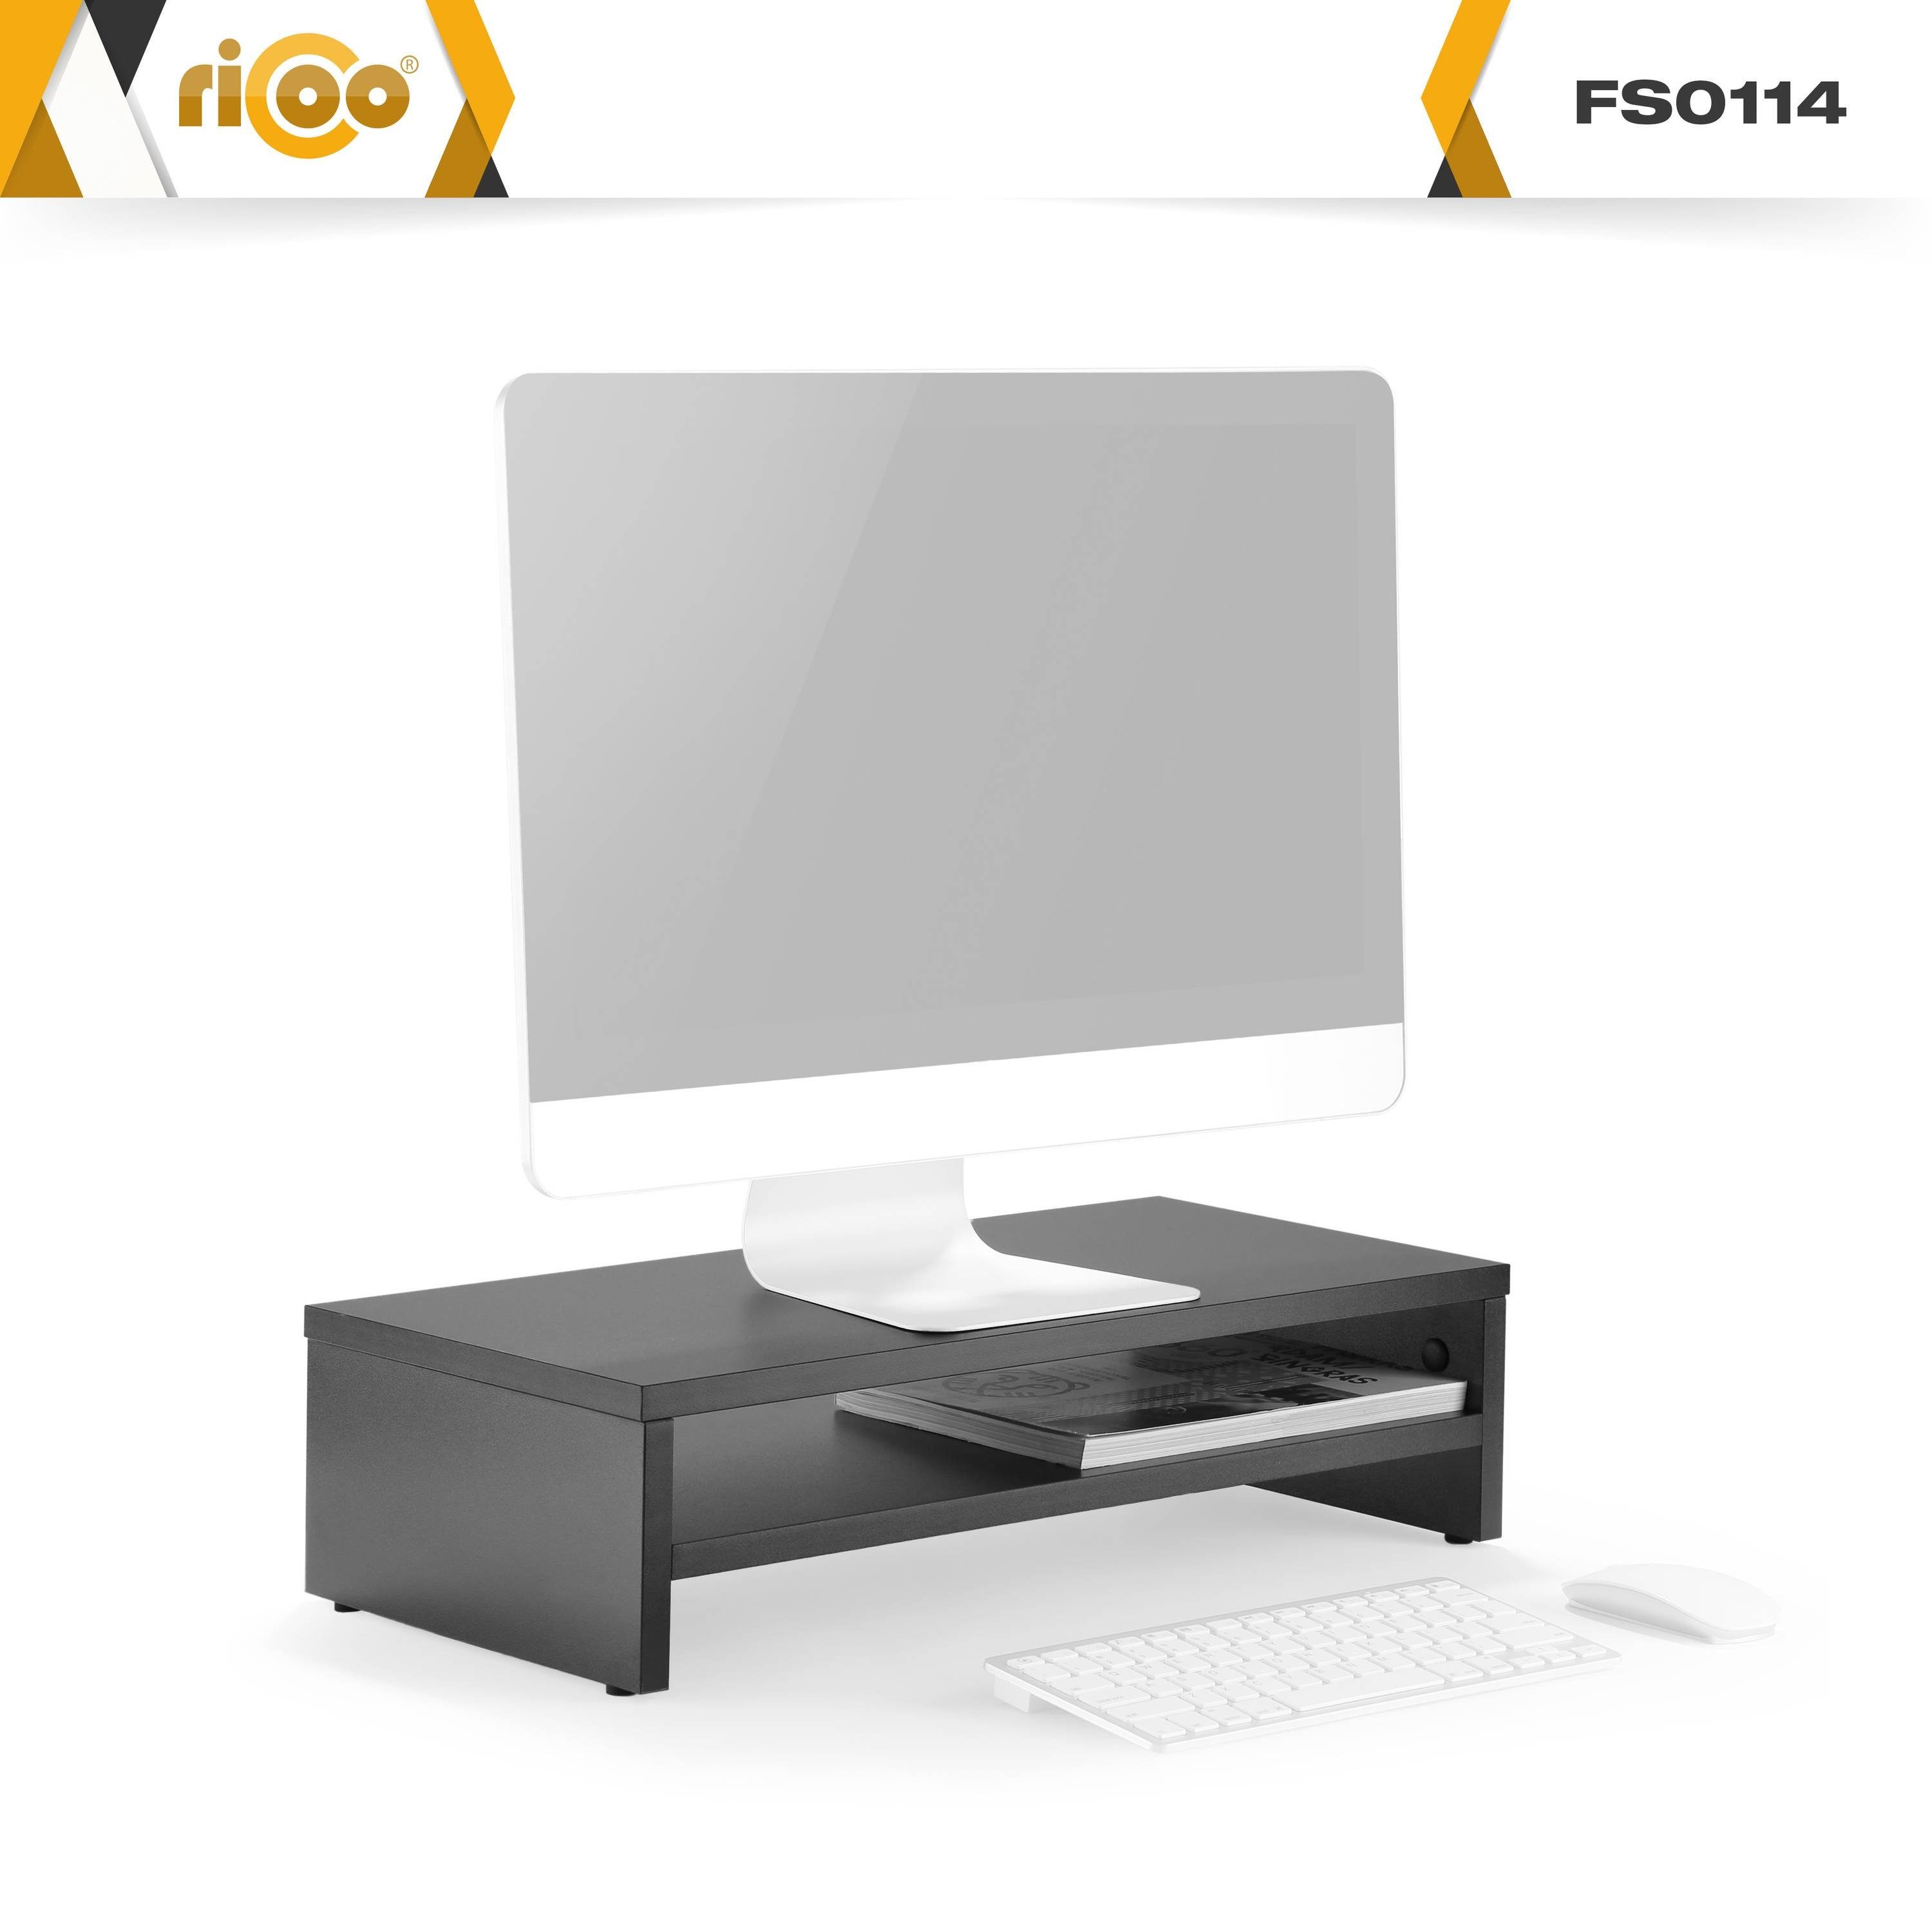 Monitorerhöhung FS0114-S, Schreibtisch Tisch RICOO Aufsatz Bildschirm Schwarz Schreibtischaufsatz Monitorständer